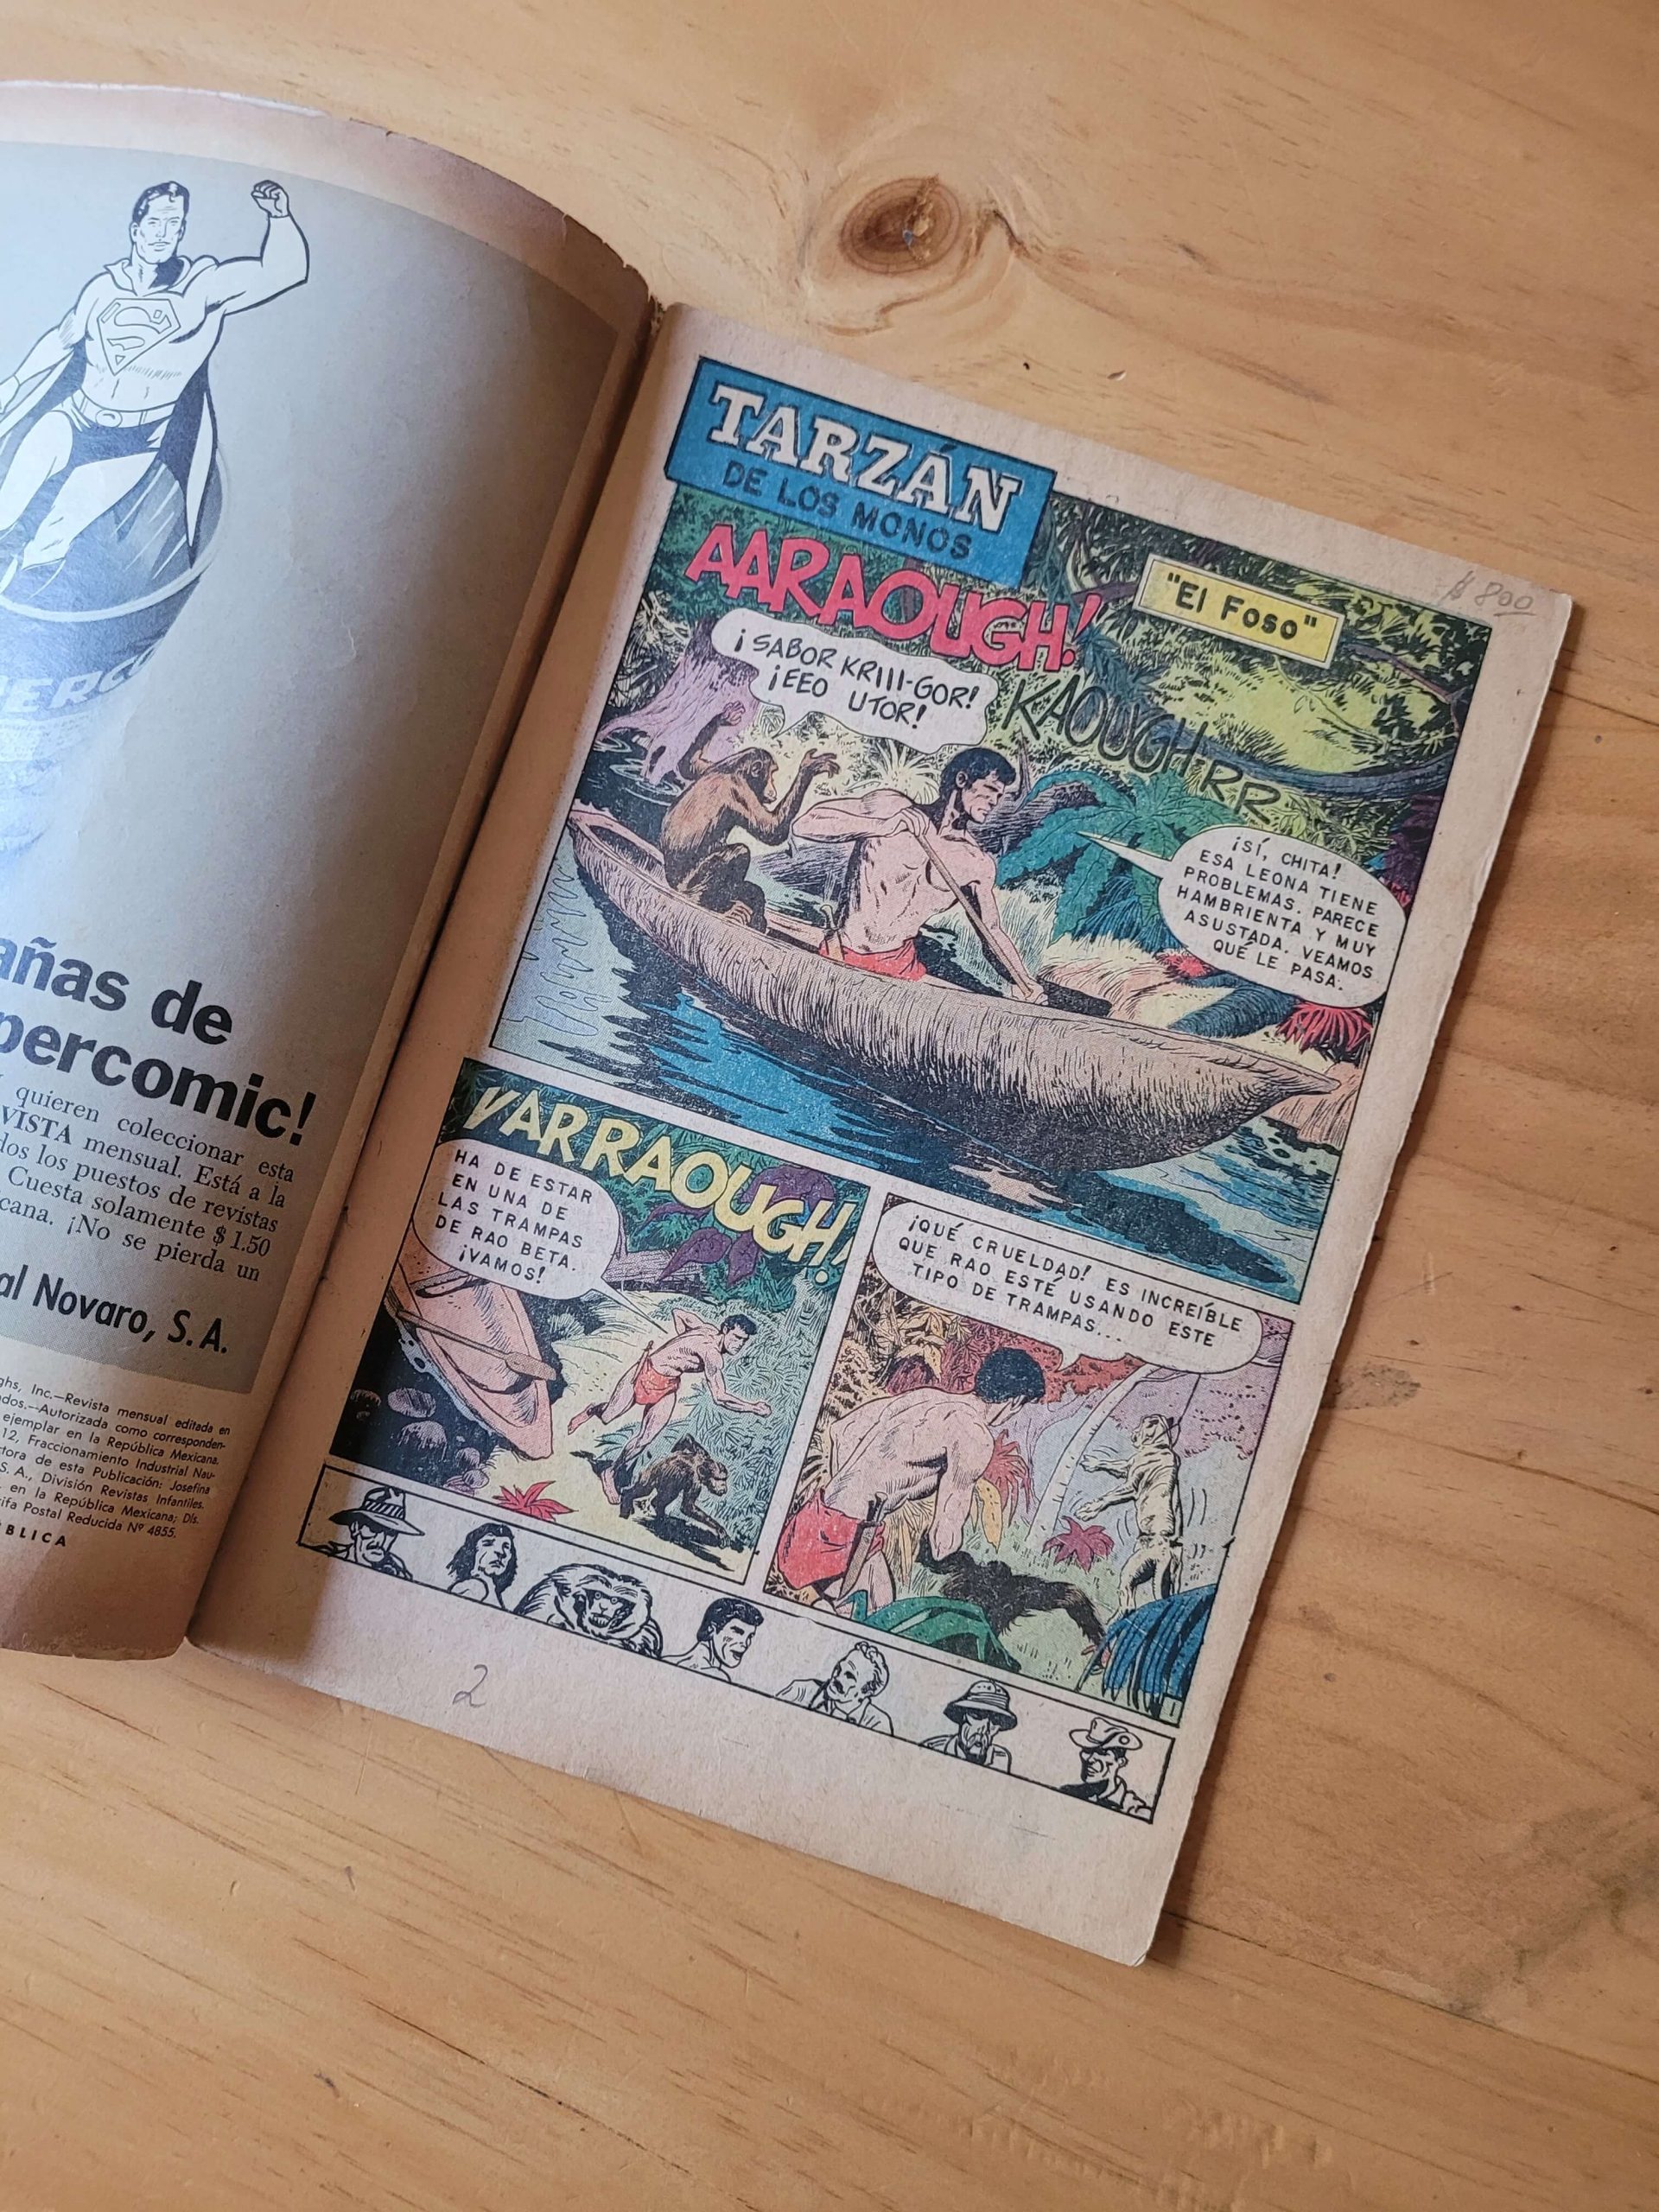 (1967) Revista TARZAN de los monos